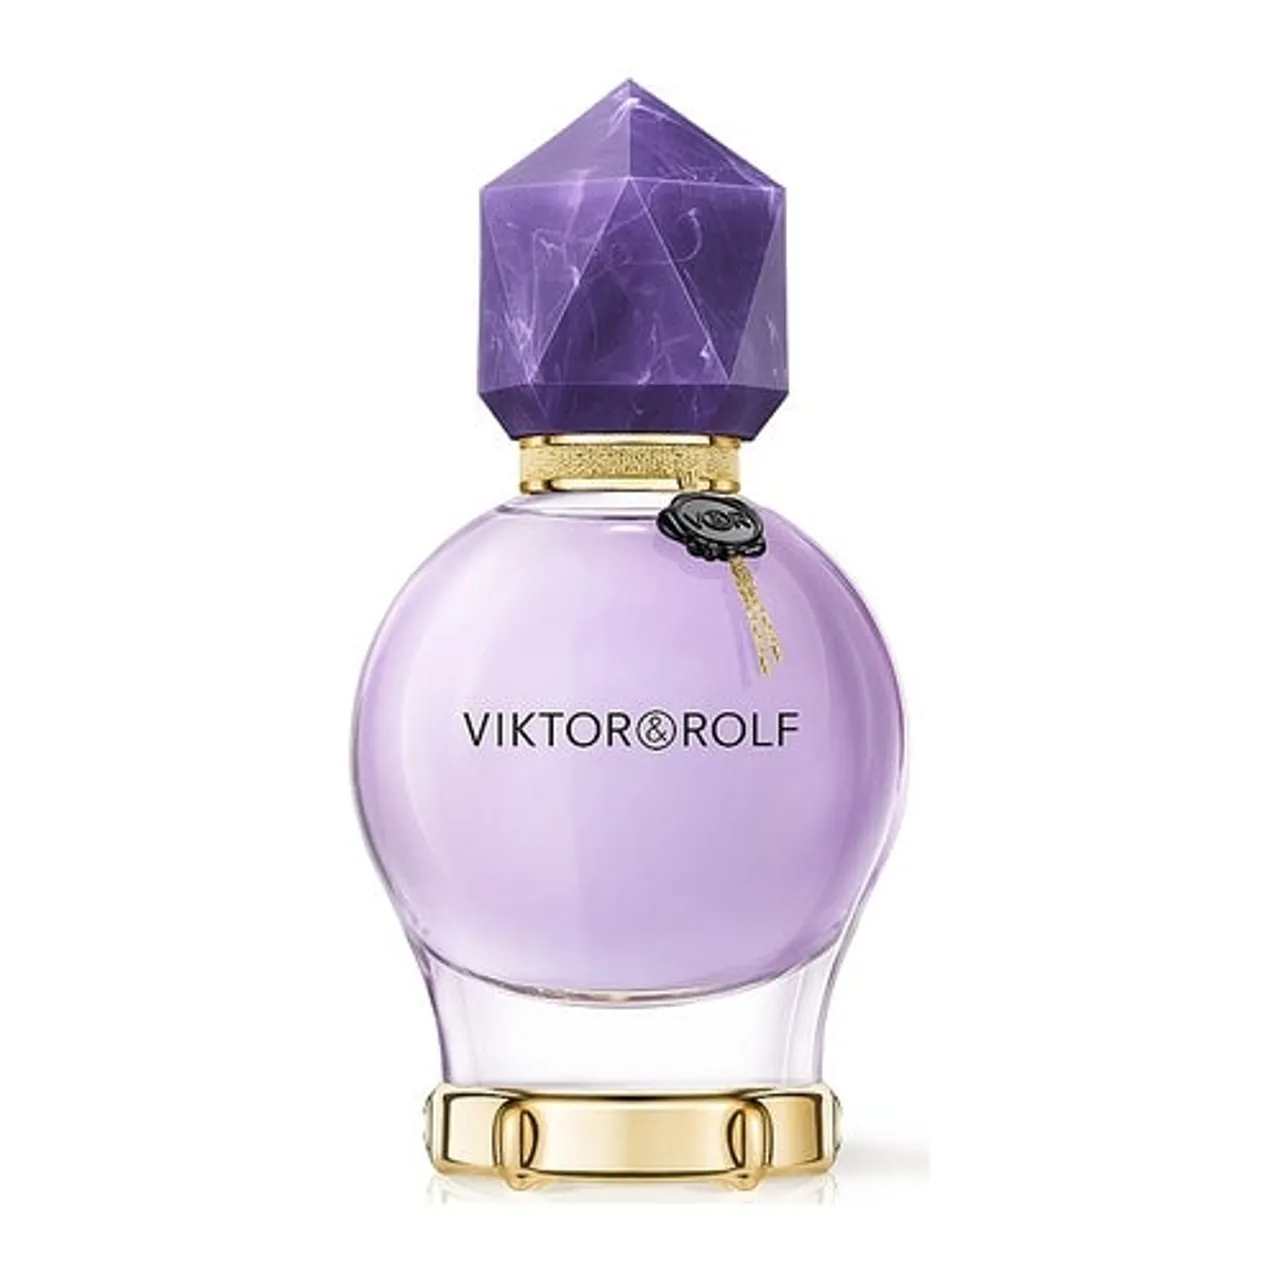 Viktor&Rolf Good Fortune Eau de Parfum Refillable 30 ml